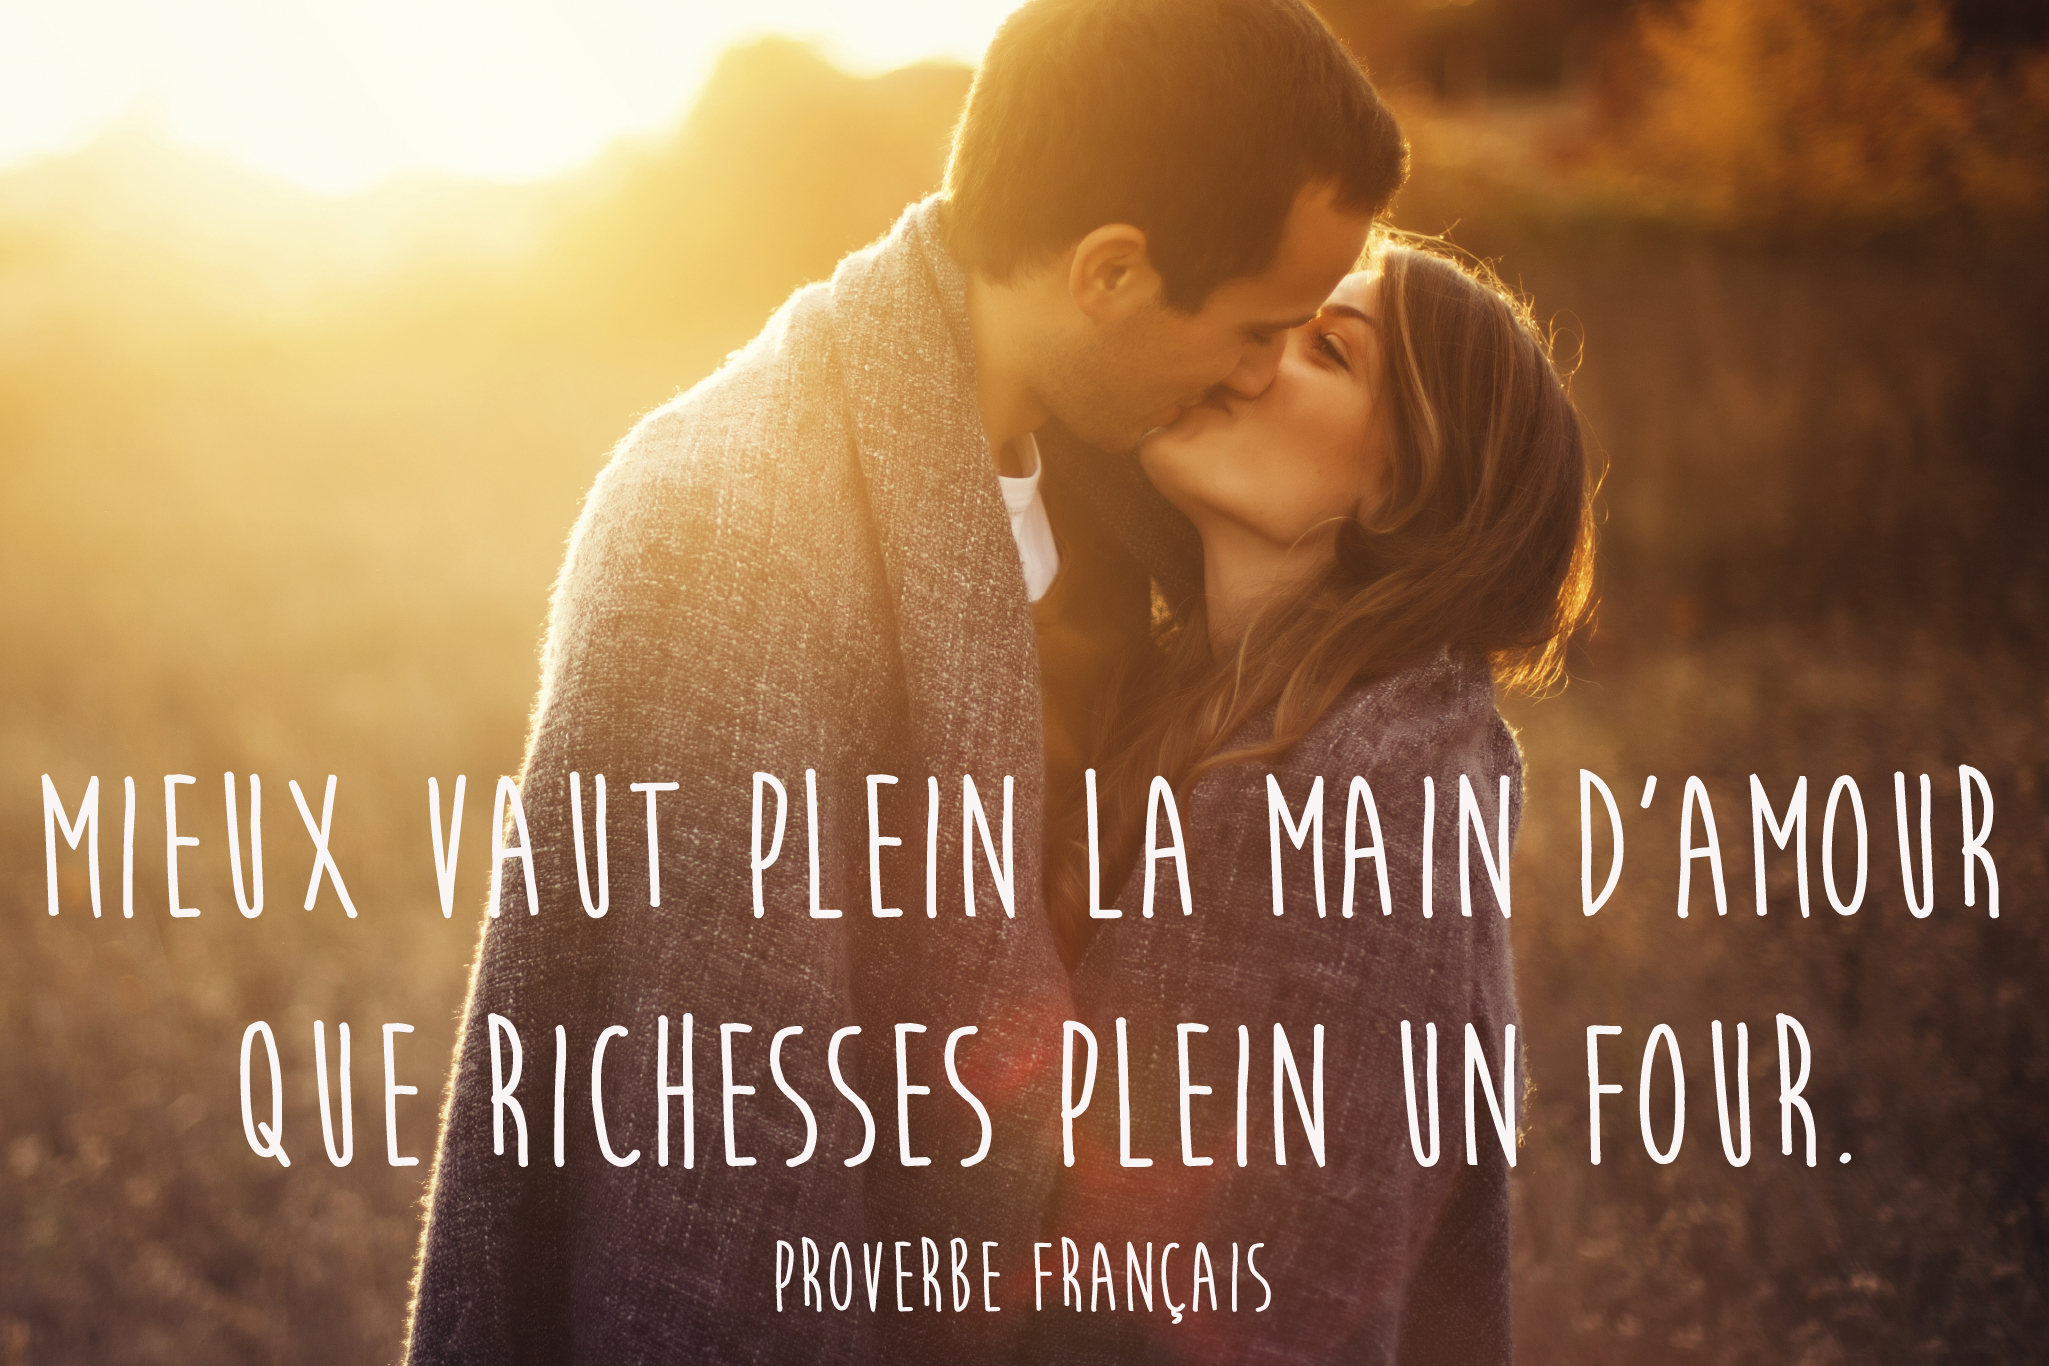 Proverbe Francais 30 Proverbes Francais Qui Nous Mettent De Bonne Humeur